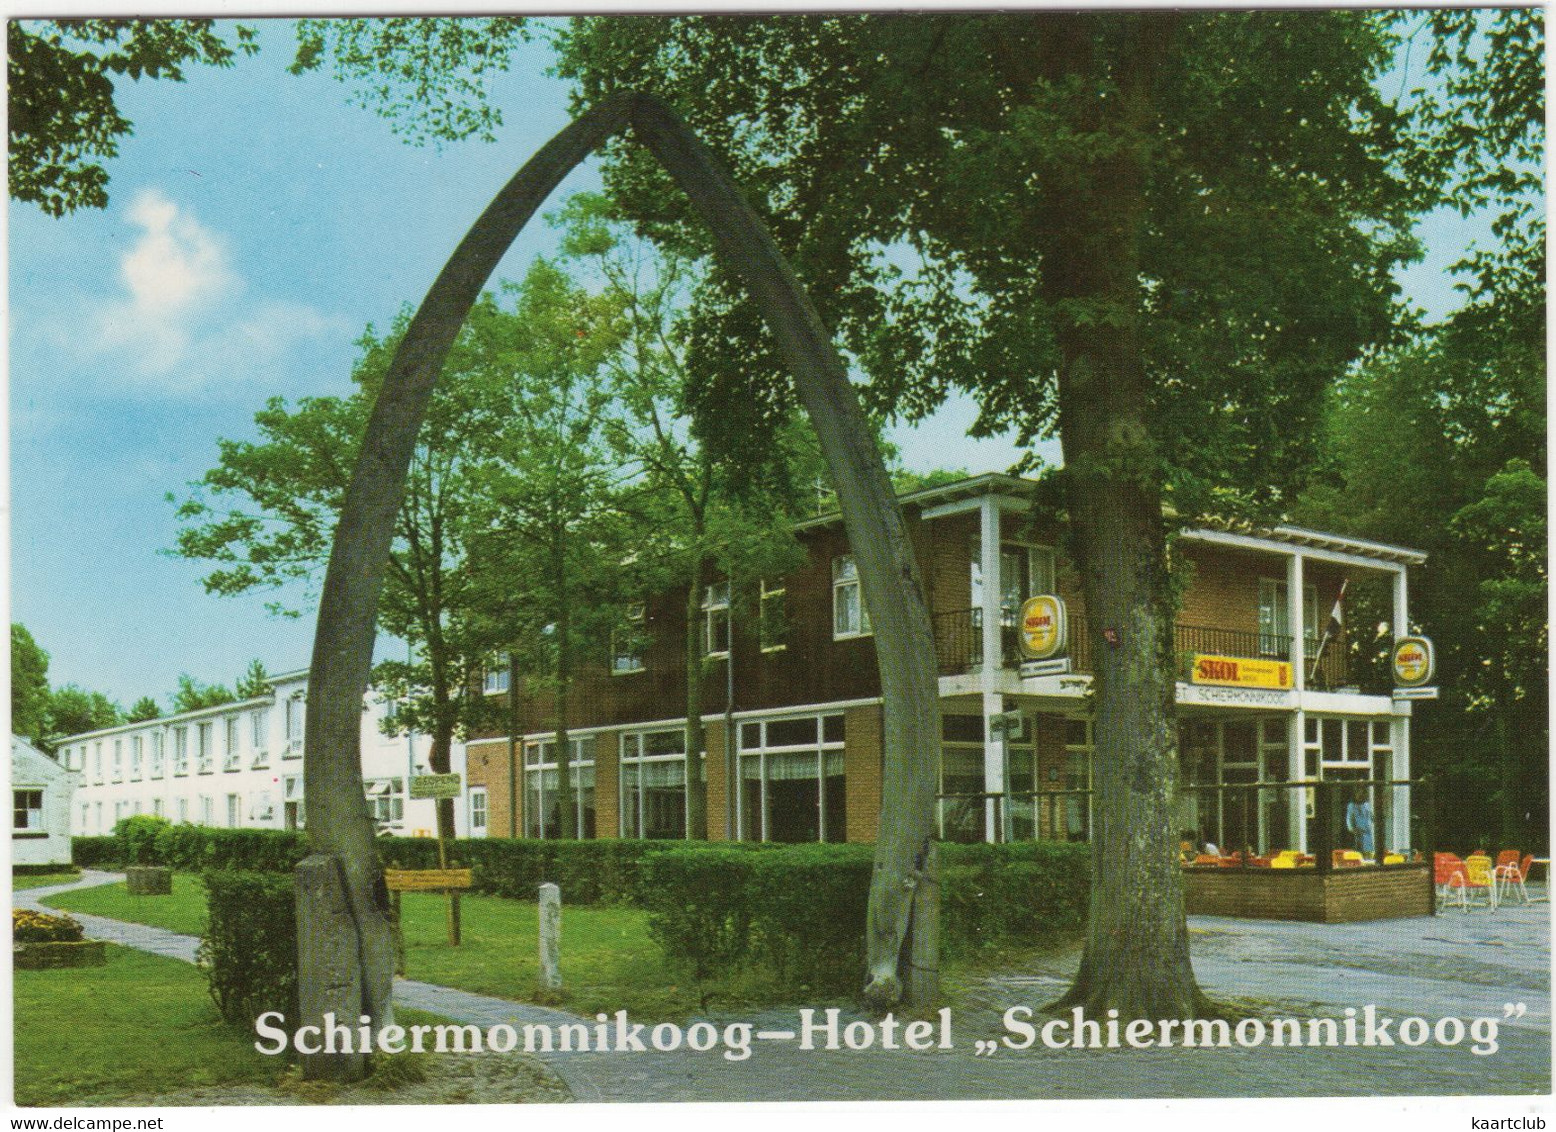 Schiermonnikoog - Hotel 'Schiermonnikoog', Reeweg 1 - Walviskaak  - (Nederland/Holland) - Schiermonnikoog